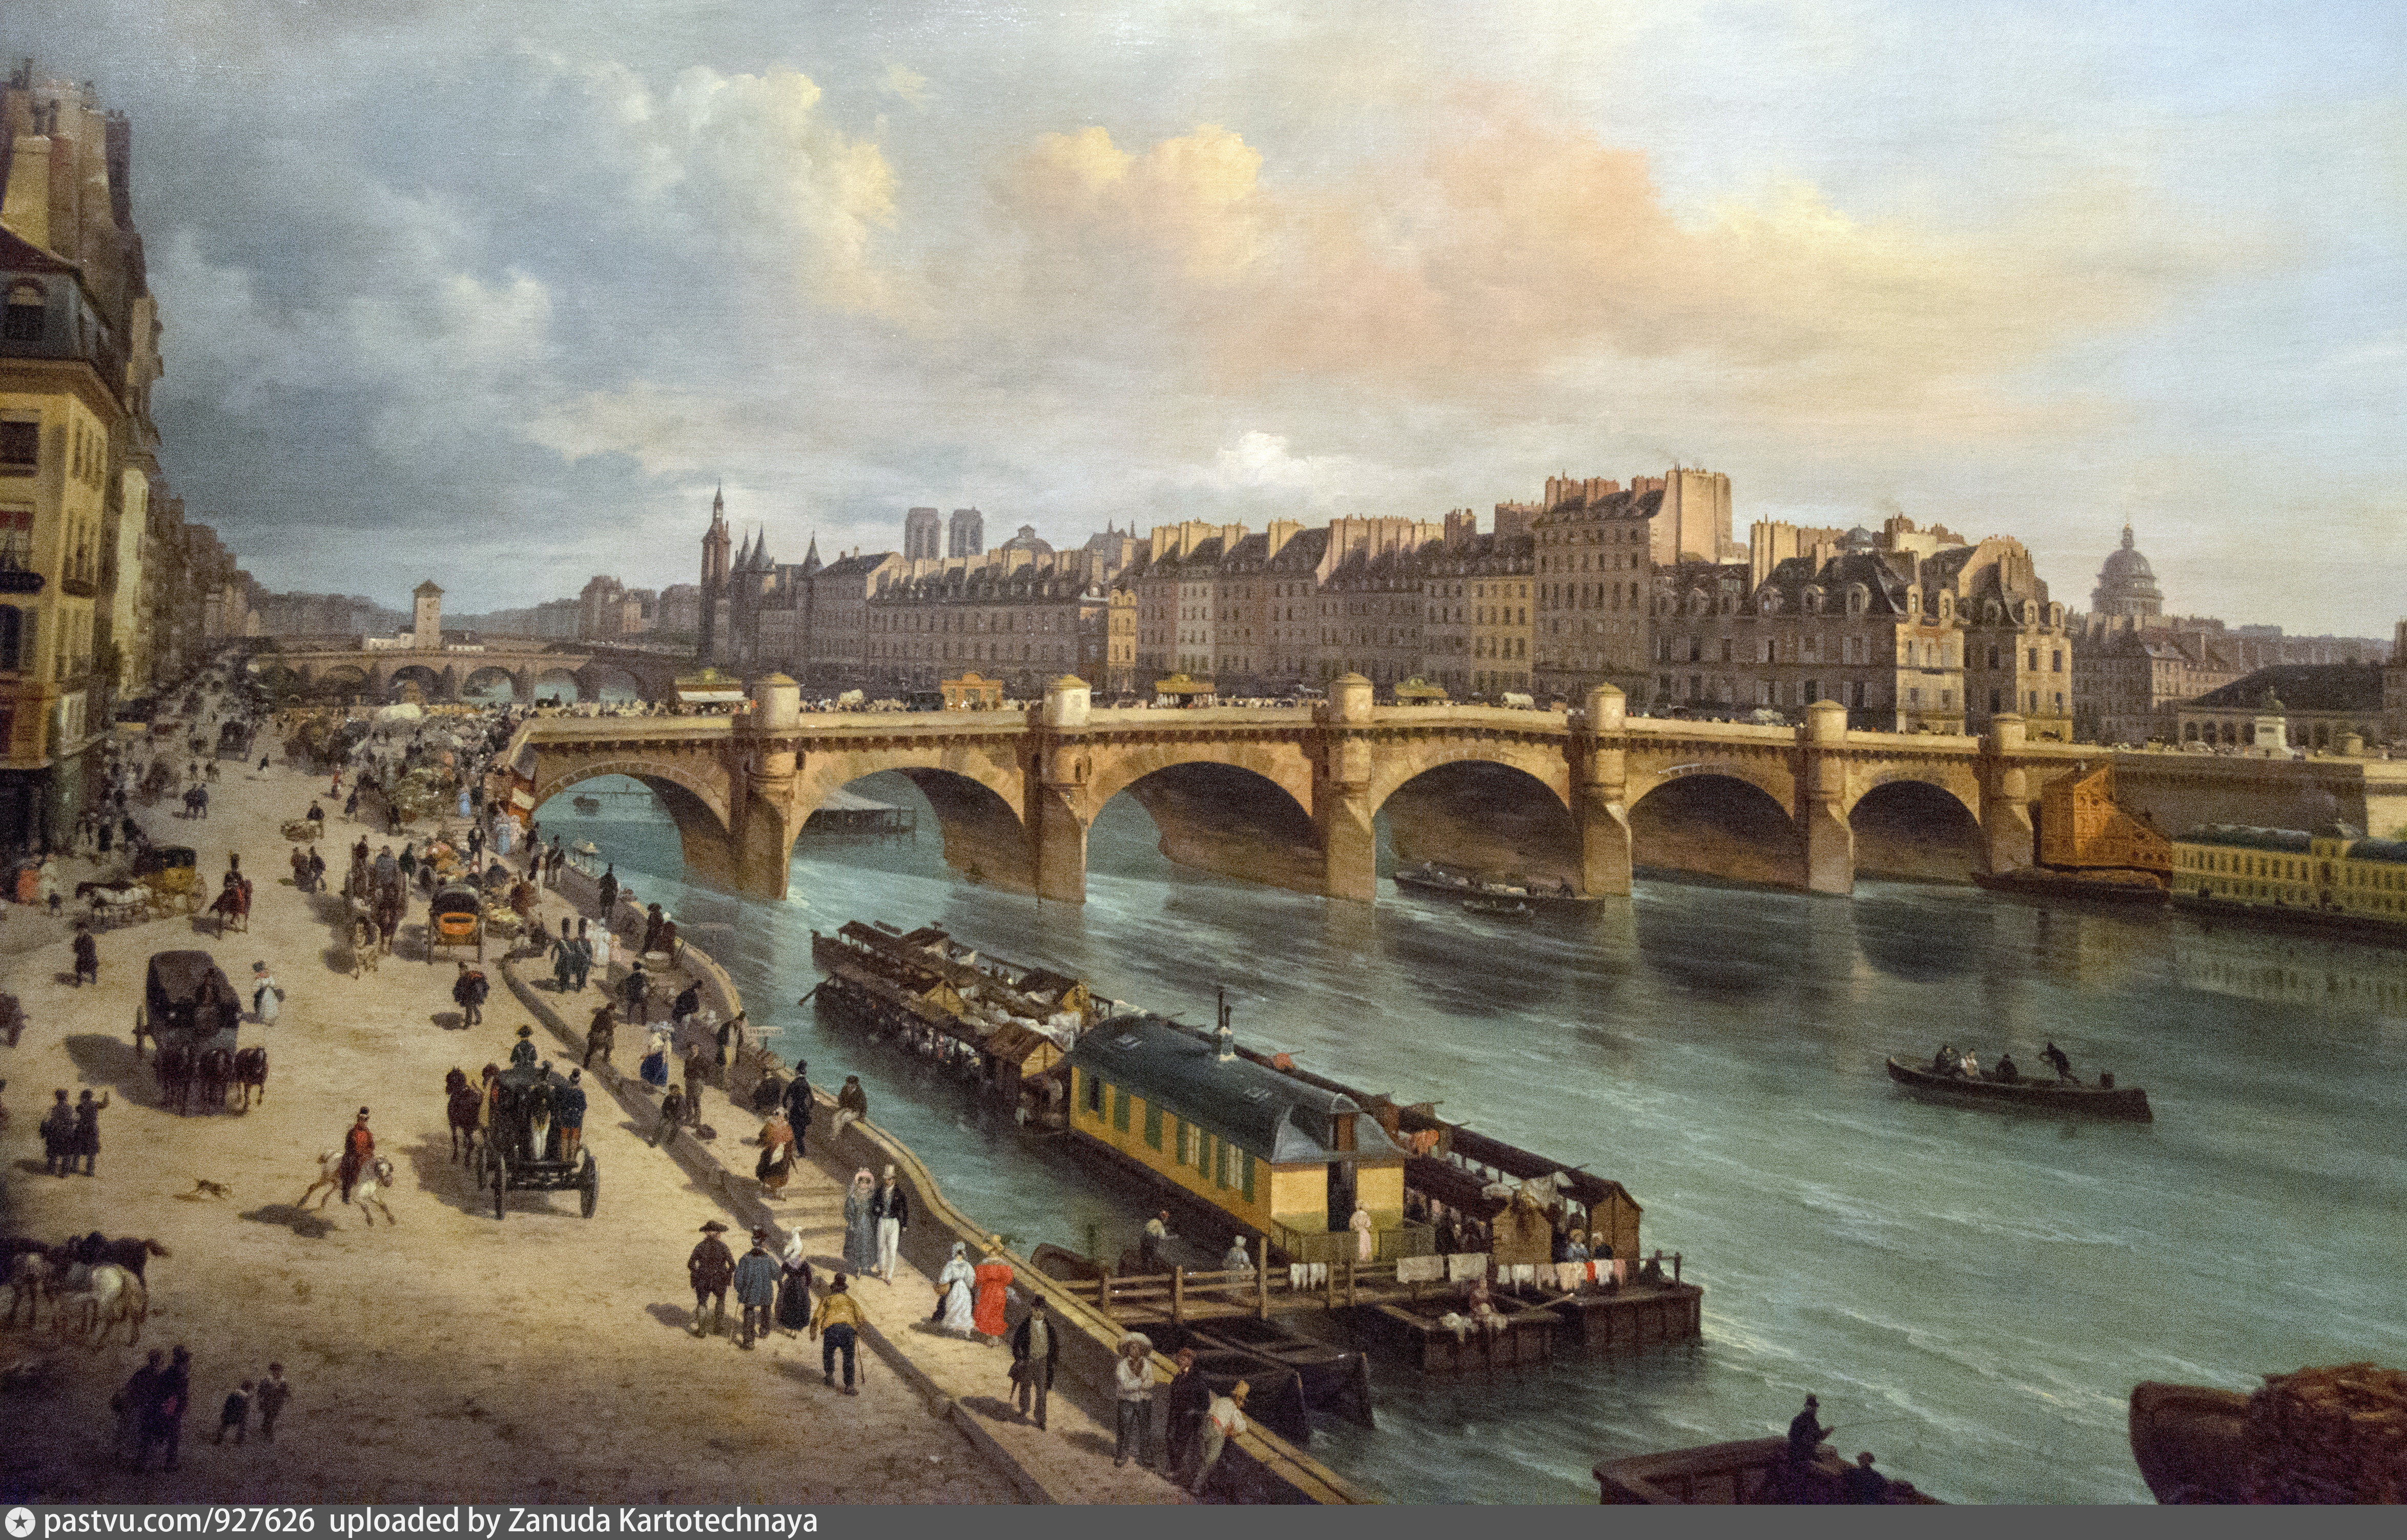 Франция 1800. Франция 1800 год. Италия 1830 е. История Франции. Джузеппе Канелла вид на новый мост.